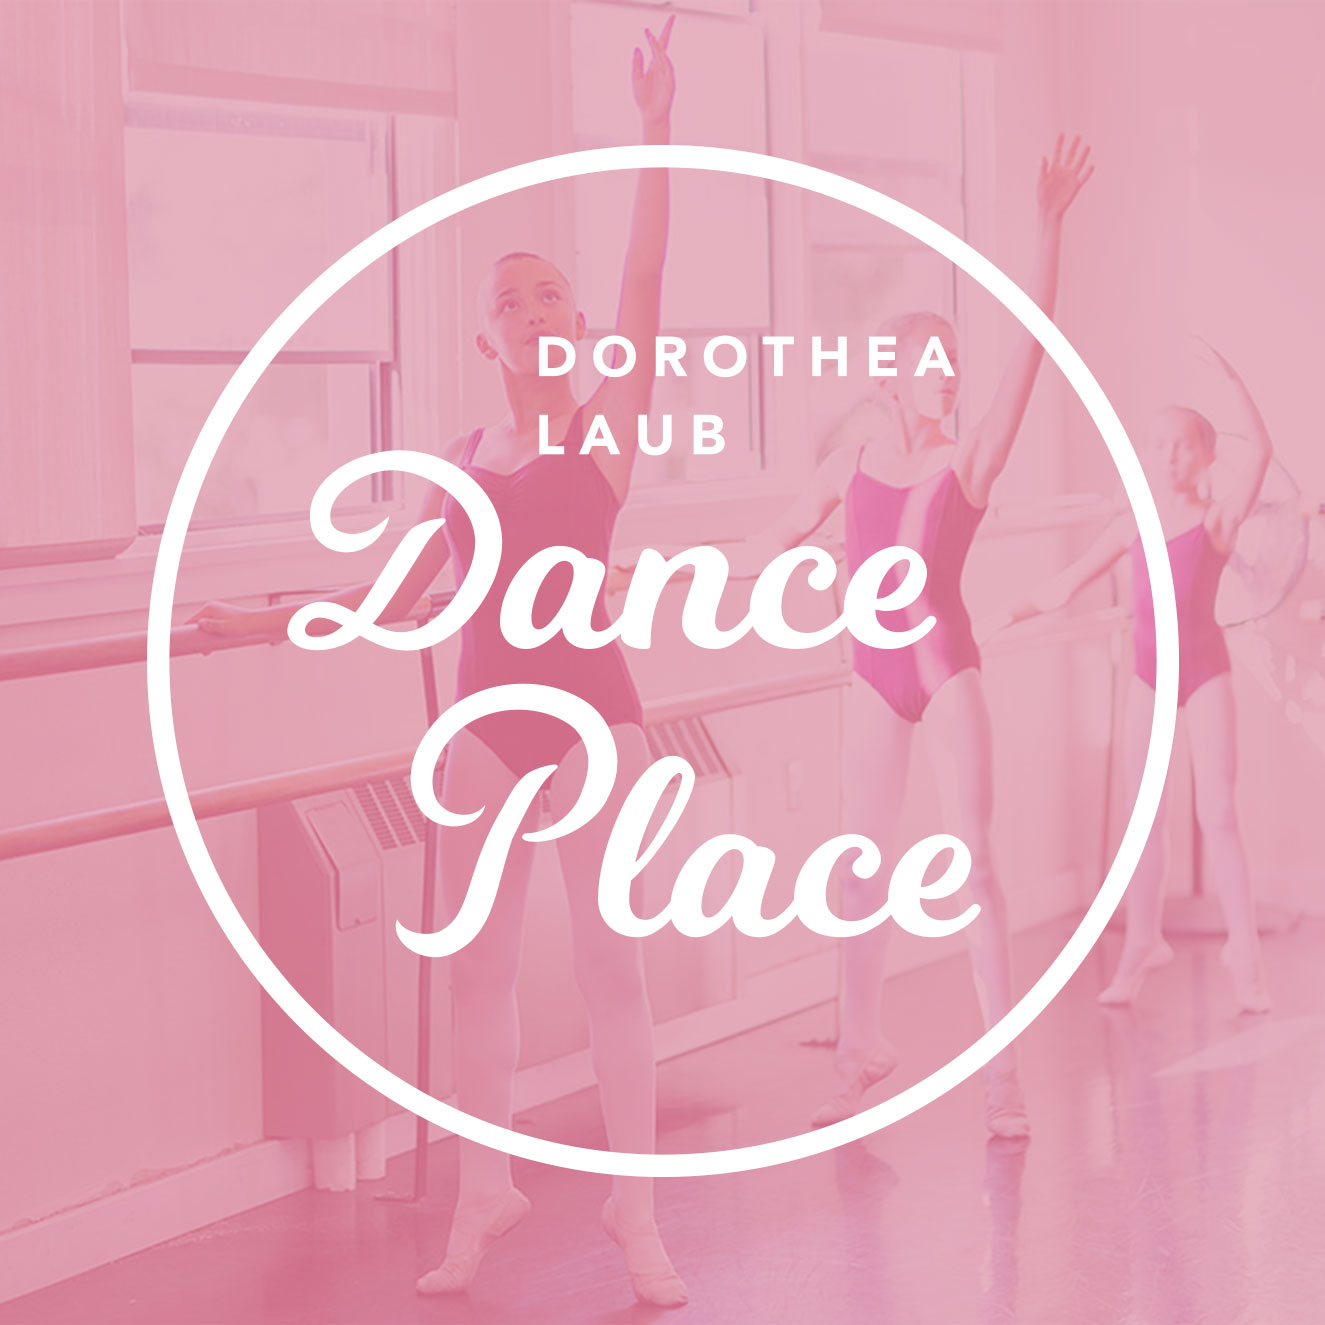 Dorothea Laub Dance Place logo